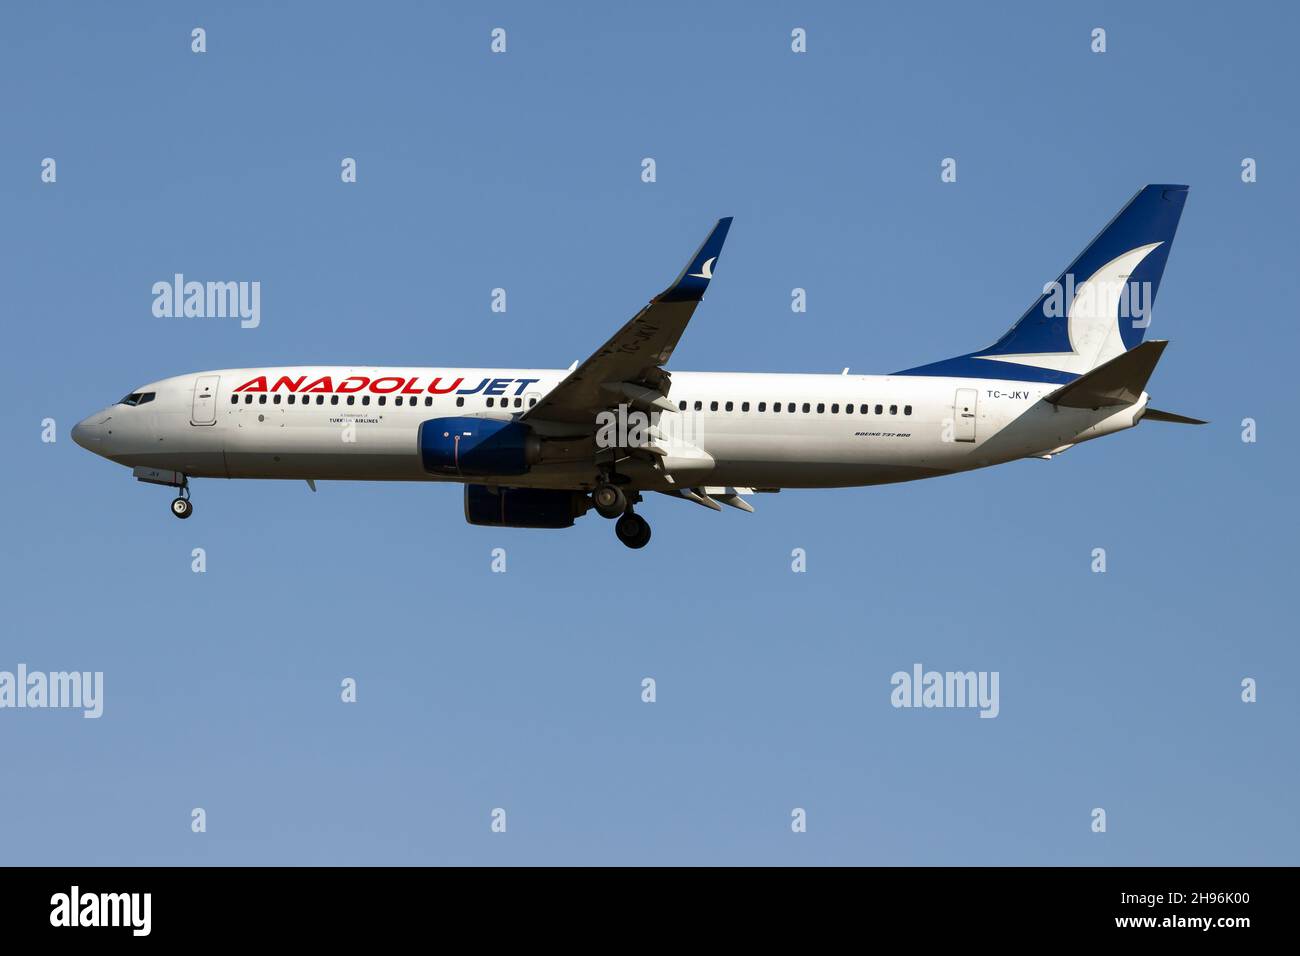 An AnadoluJet Boeing 737-800 landing at Milan Mapensa airport. Stock Photo